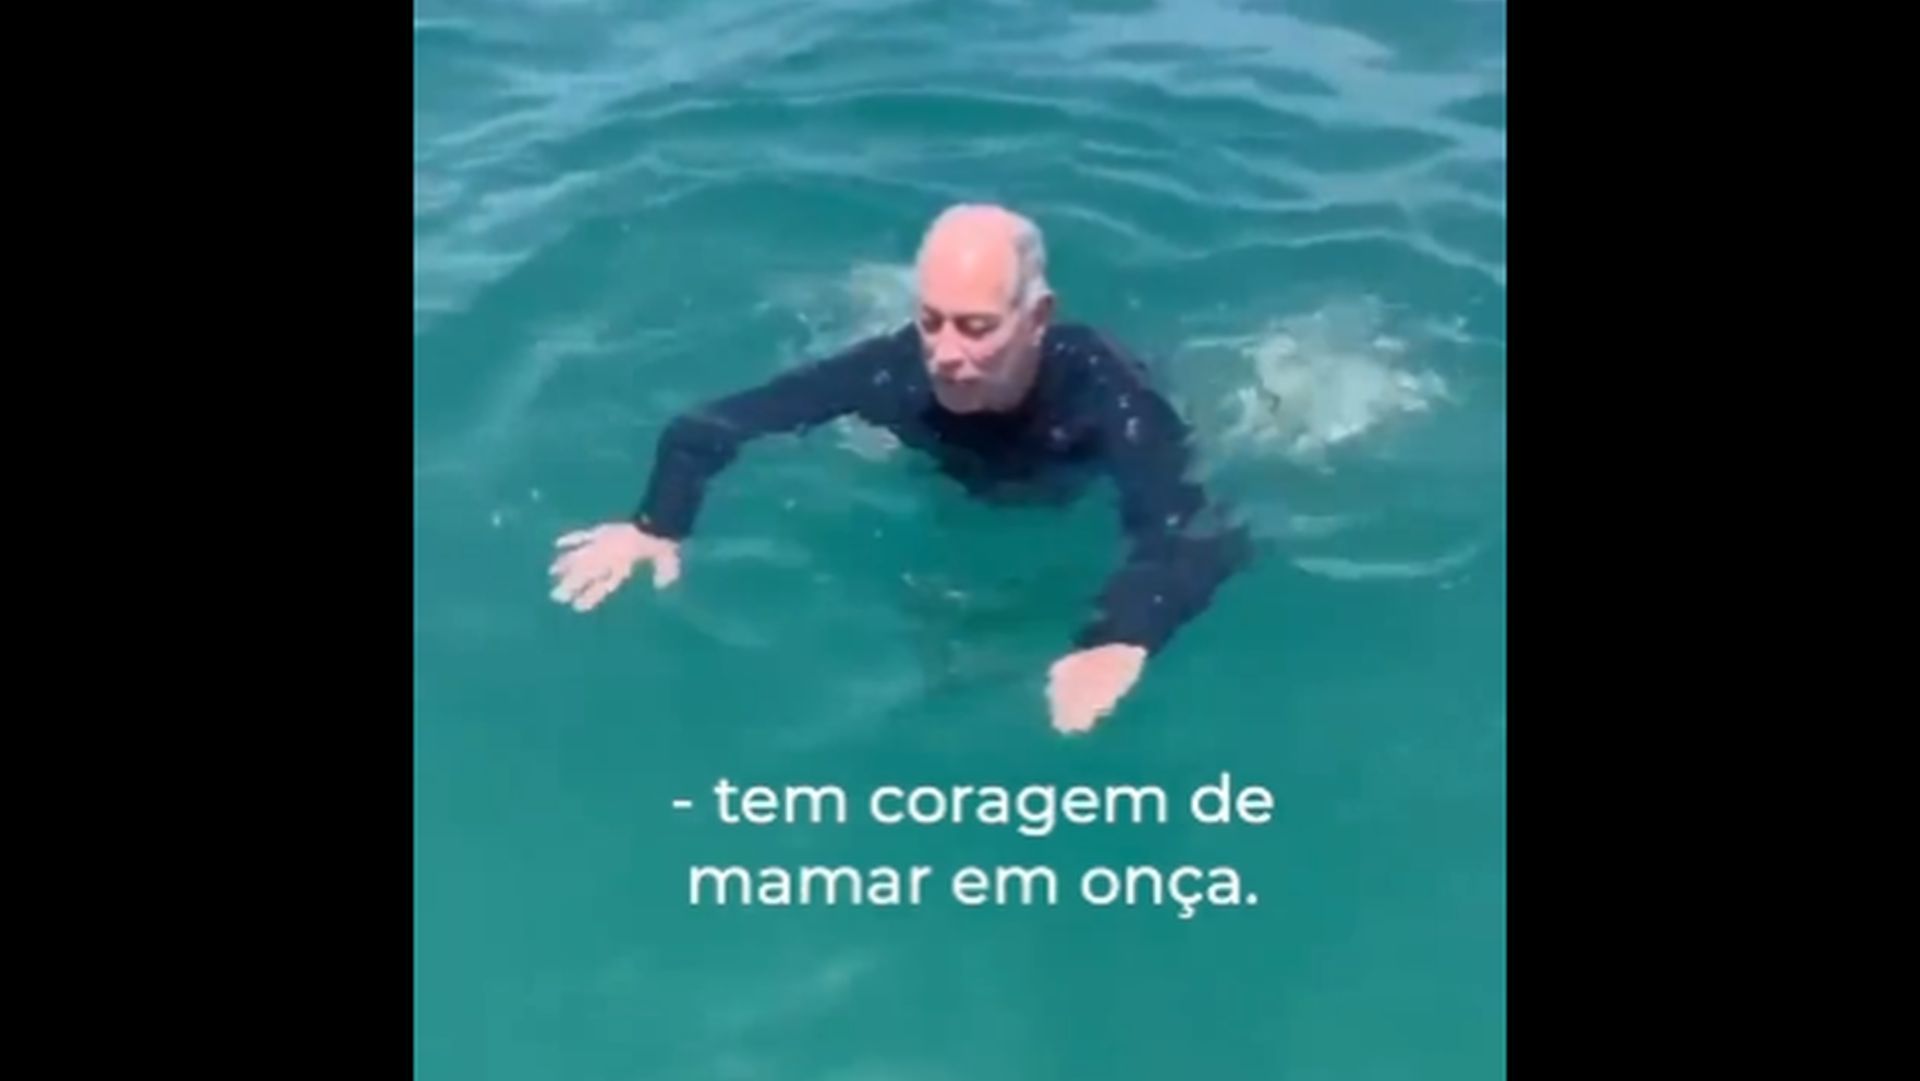 Ciro posta VÍDEO nadando com tubarão: "Aqui tem coragem de mamar em onça”